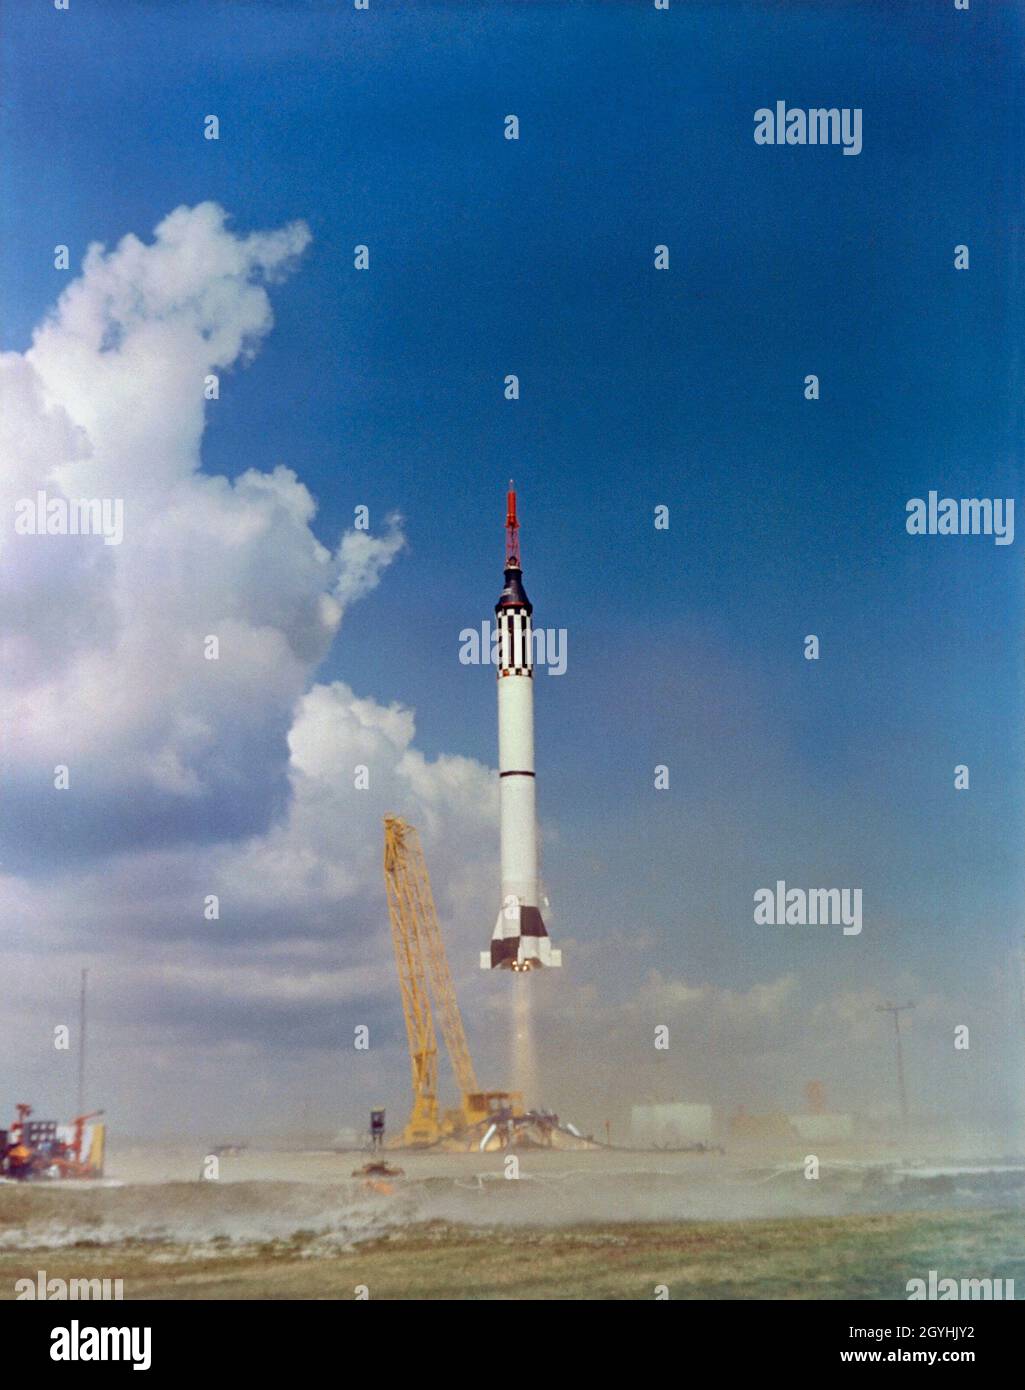 (31 de enero de 1961) --- El lanzamiento de la misión suborbital Mercury-Redstone 2 (MR-2) desde Cabo Cañaveral, Florida, el 31 de enero de 1961. A bordo de la nave espacial estaba ?Ham?, un chimpancé de 37 libras. A pesar de un factor de aceleración excesiva, el vuelo se consideró exitoso. Después de la recuperación Ham parecía estar en buenas condiciones fisiológicas, pero algún tiempo después cuando se le mostró la nave espacial Mercury, era visualmente evidente que no tenía más interés en cooperar con el programa de vuelo espacial Foto de stock